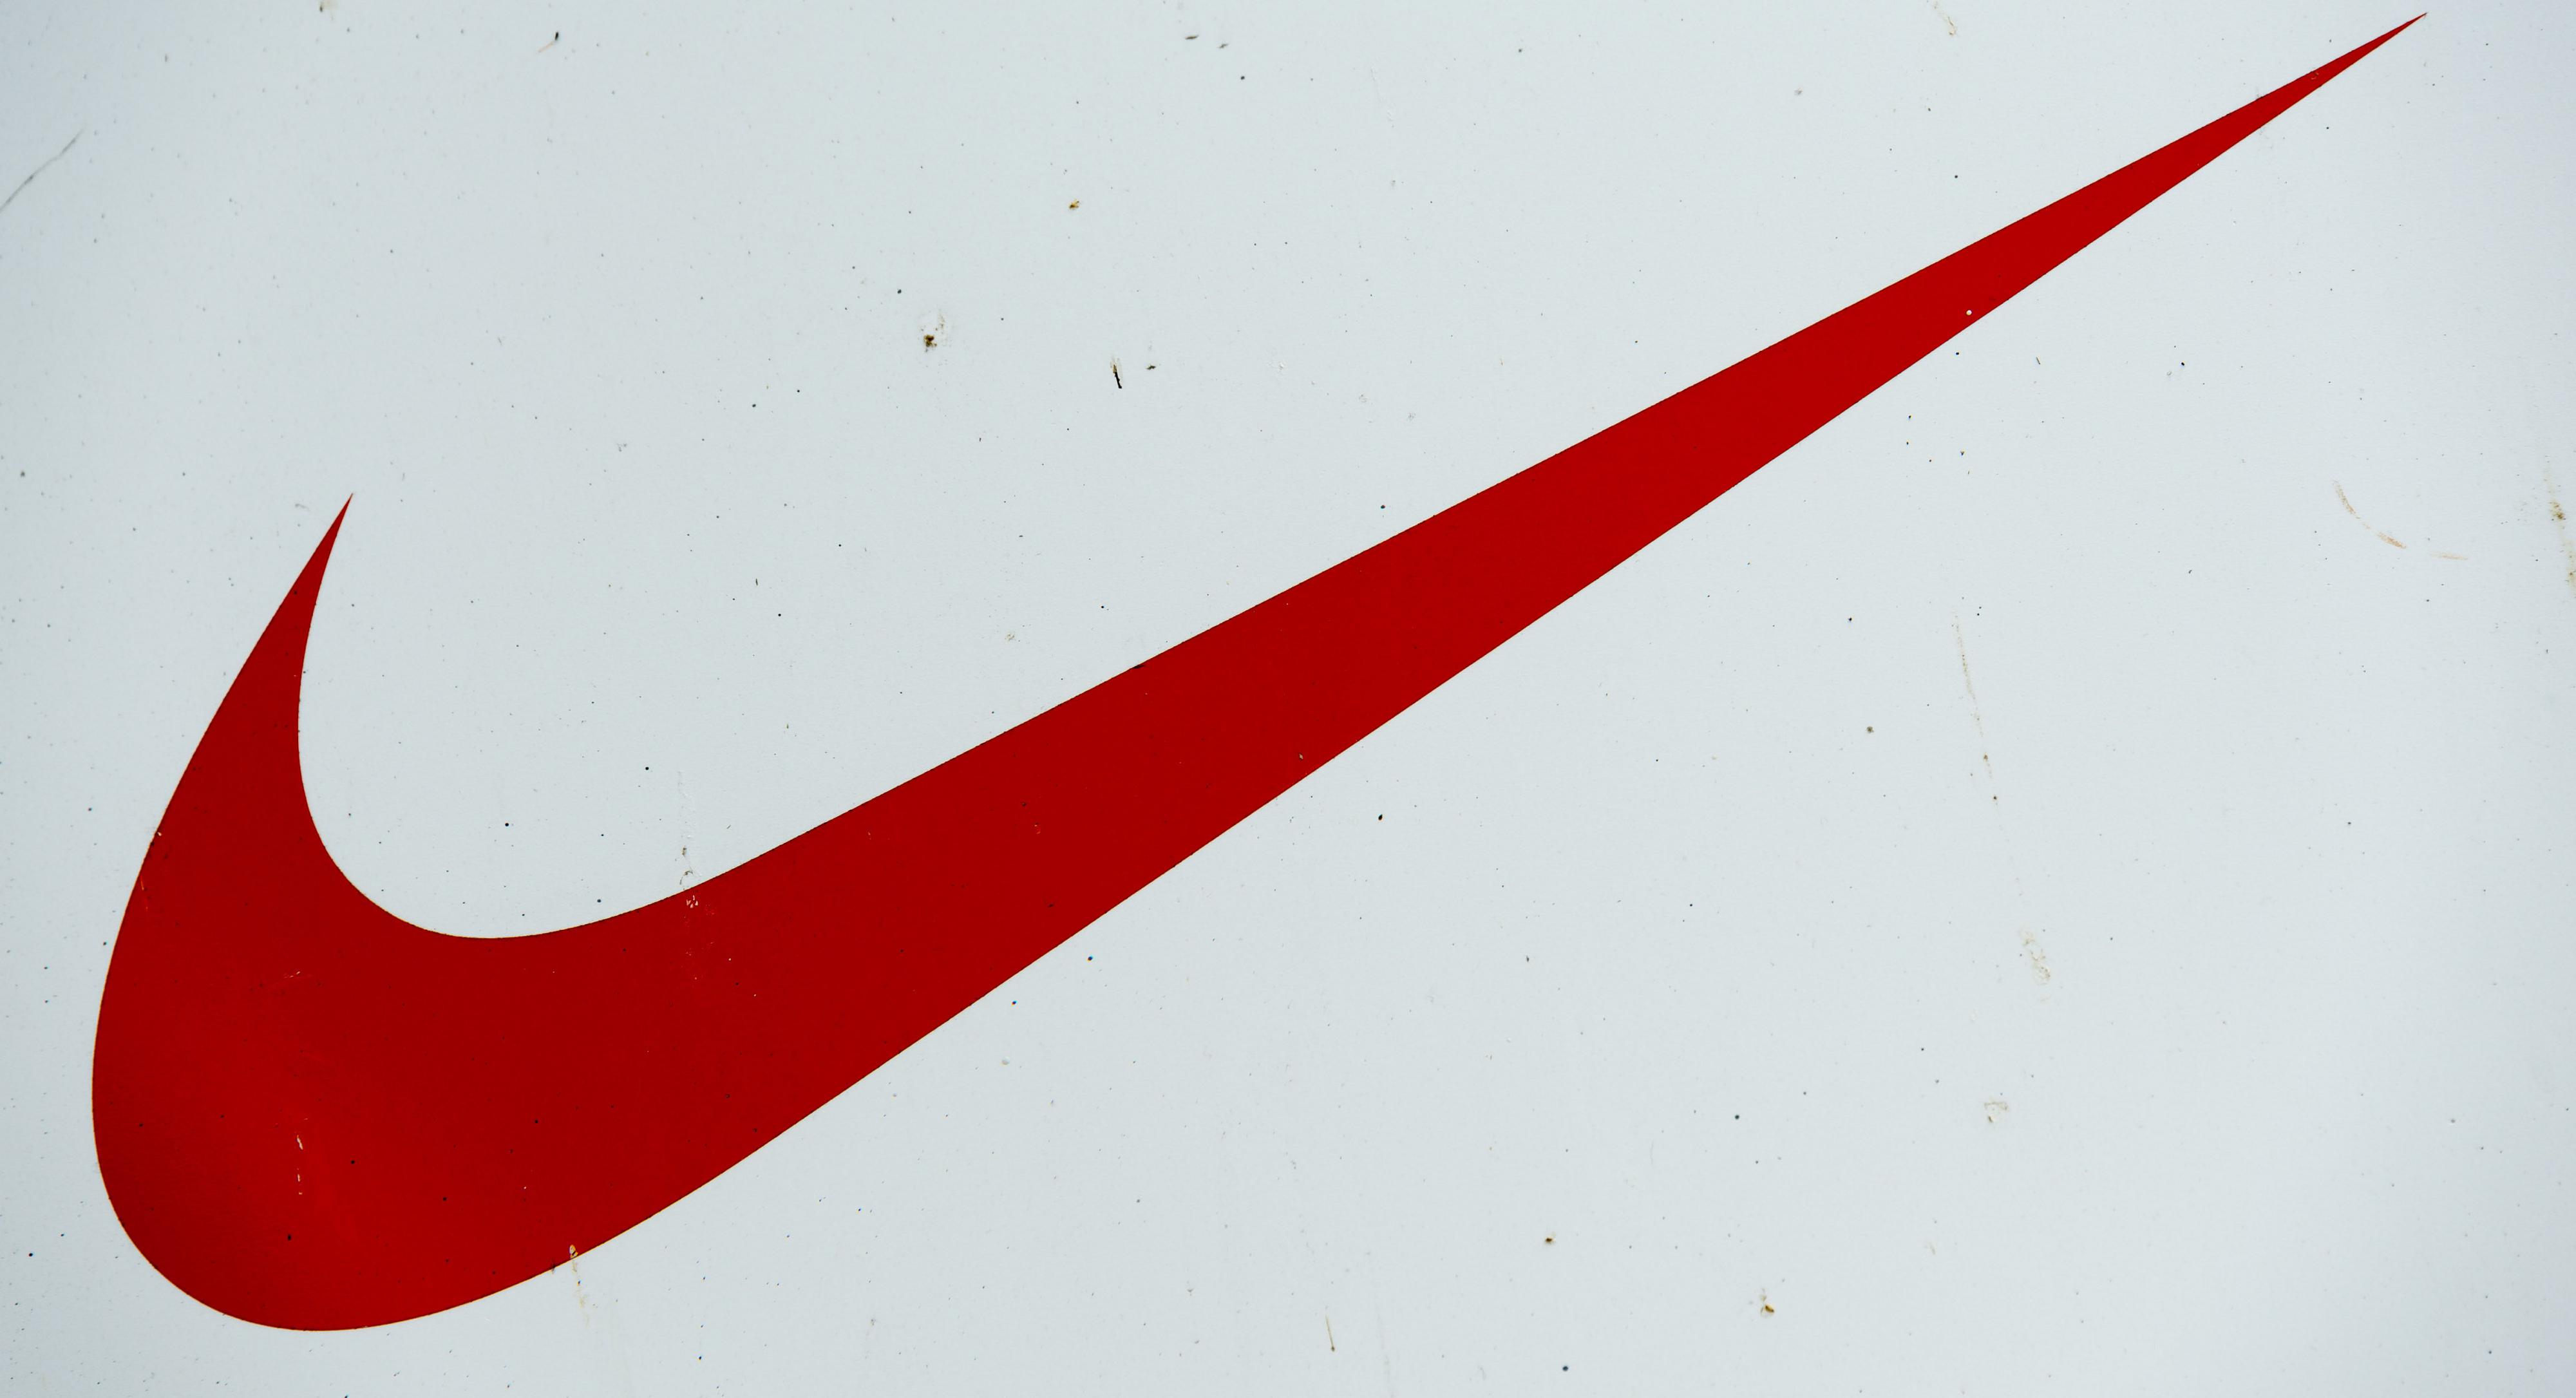 spuiten Nauwkeurig Voor een dagje uit Gemengde reacties op plussize model in Nike-reclame